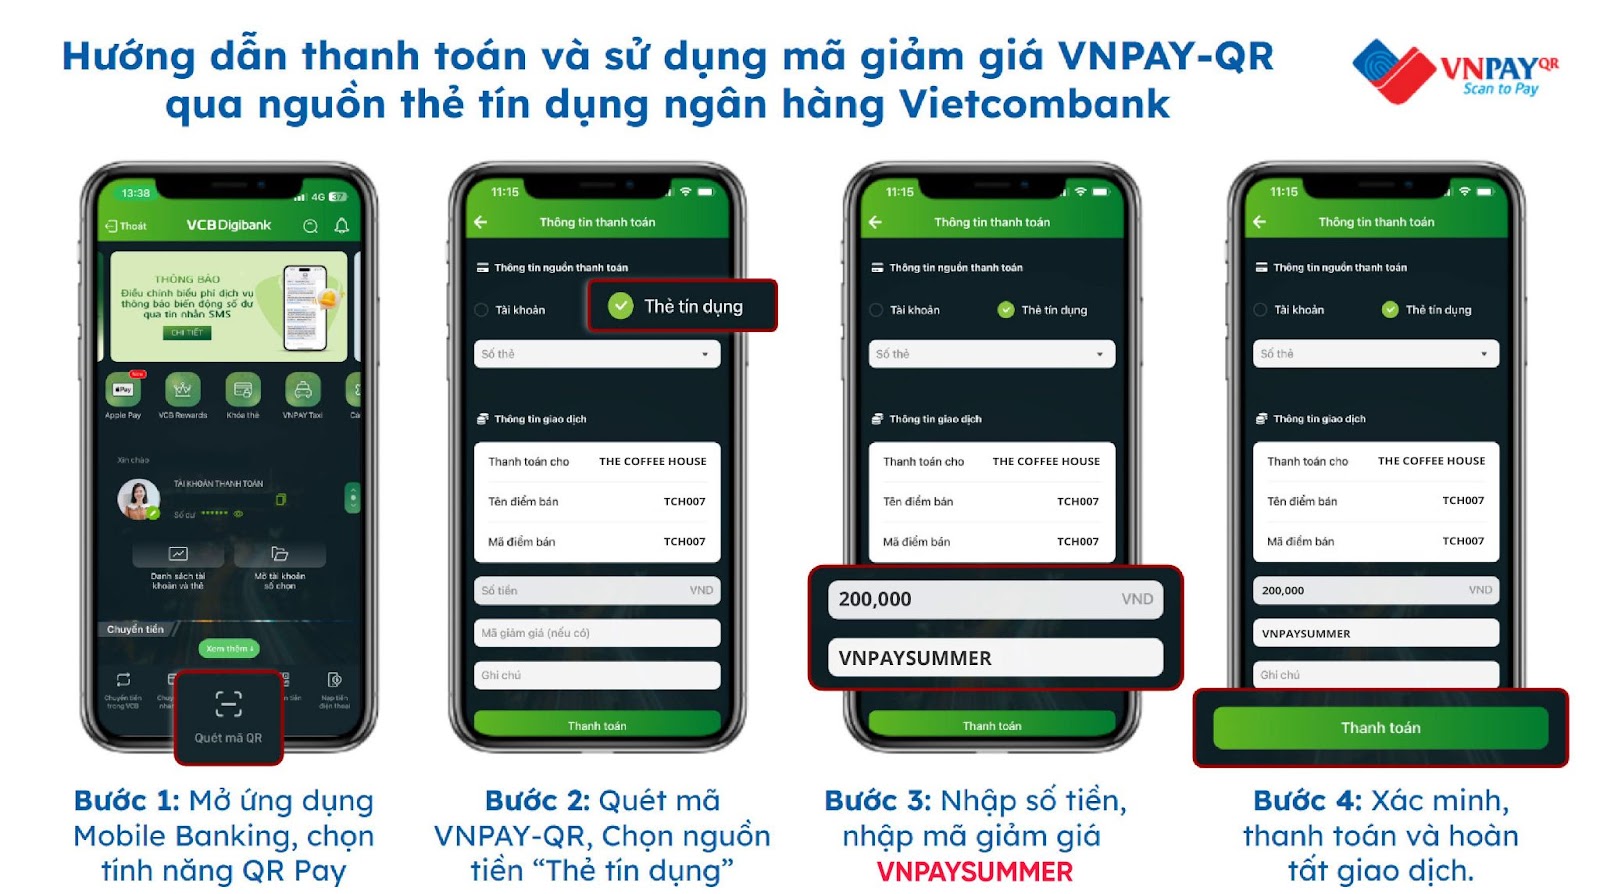 Gấp đôi ưu đãi mua sắm khi thanh toán VNPAY-QR bằng thẻ tín dụng Vietcombank - Ảnh 2.